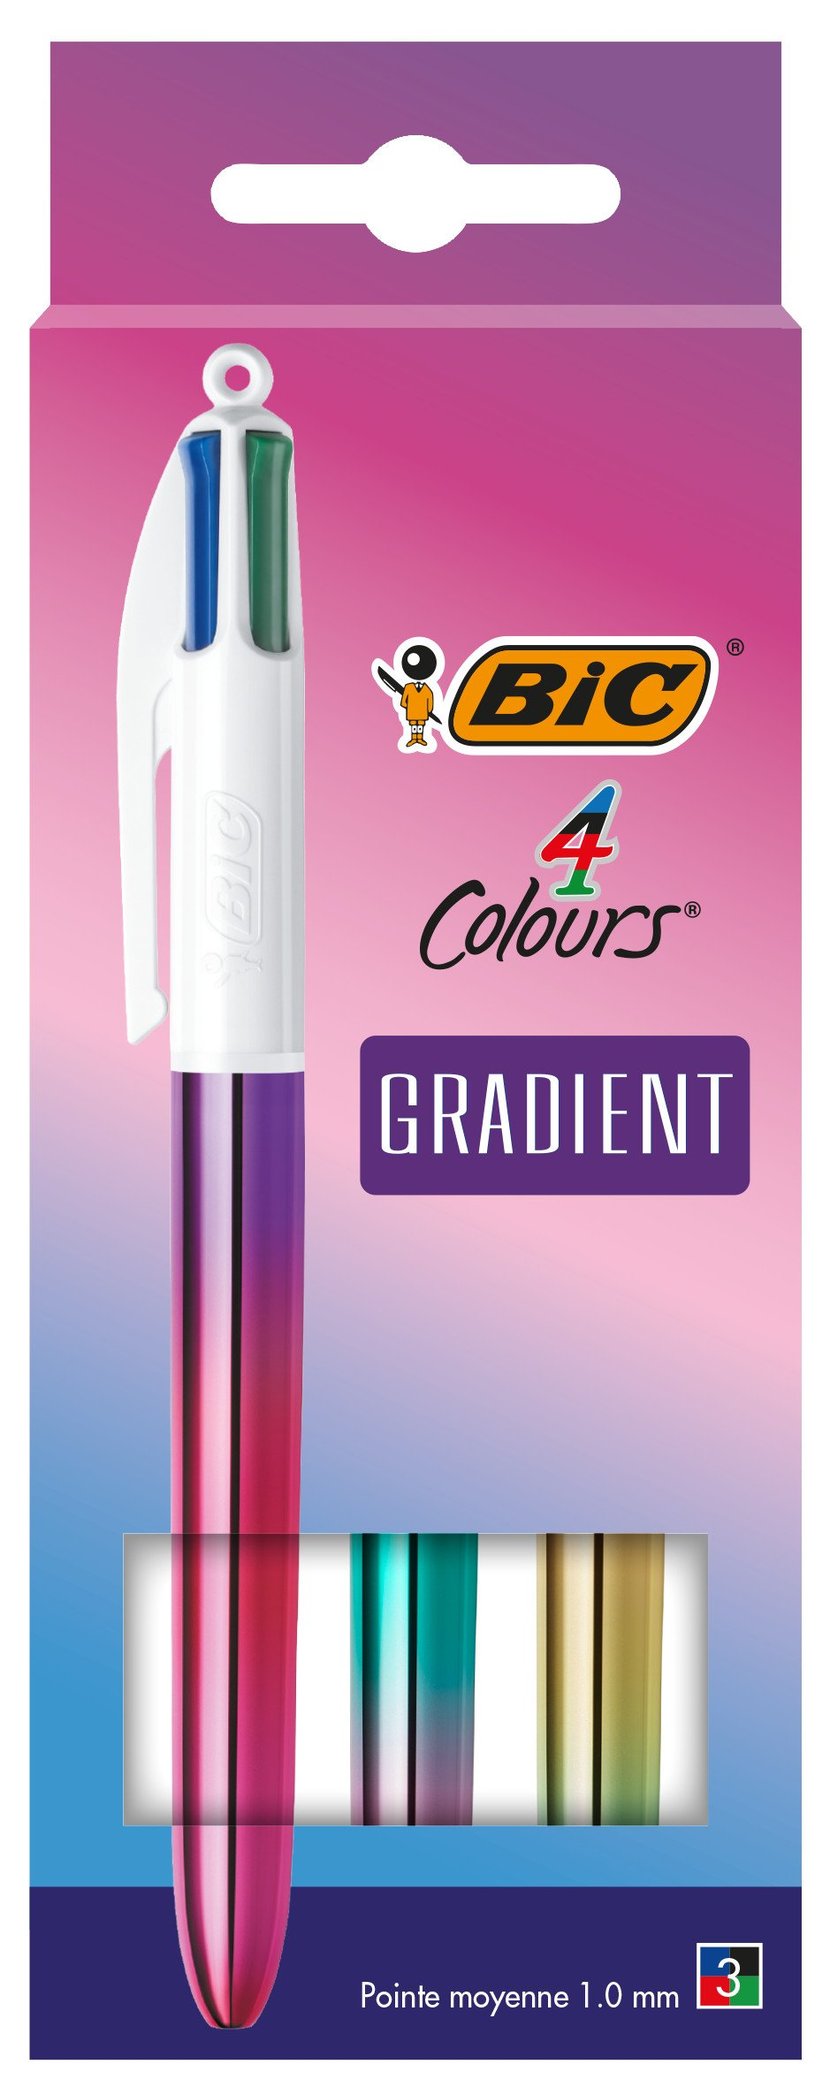 Cultura Champniers - [NOUVEAUTE] Le succès du stylo 4 couleurs n'est plus à  prouver. Mais qu'en sera-til du 4 couleurs effaçable ?!! Cultura innove  alors venez vite le découvrir en magasin !